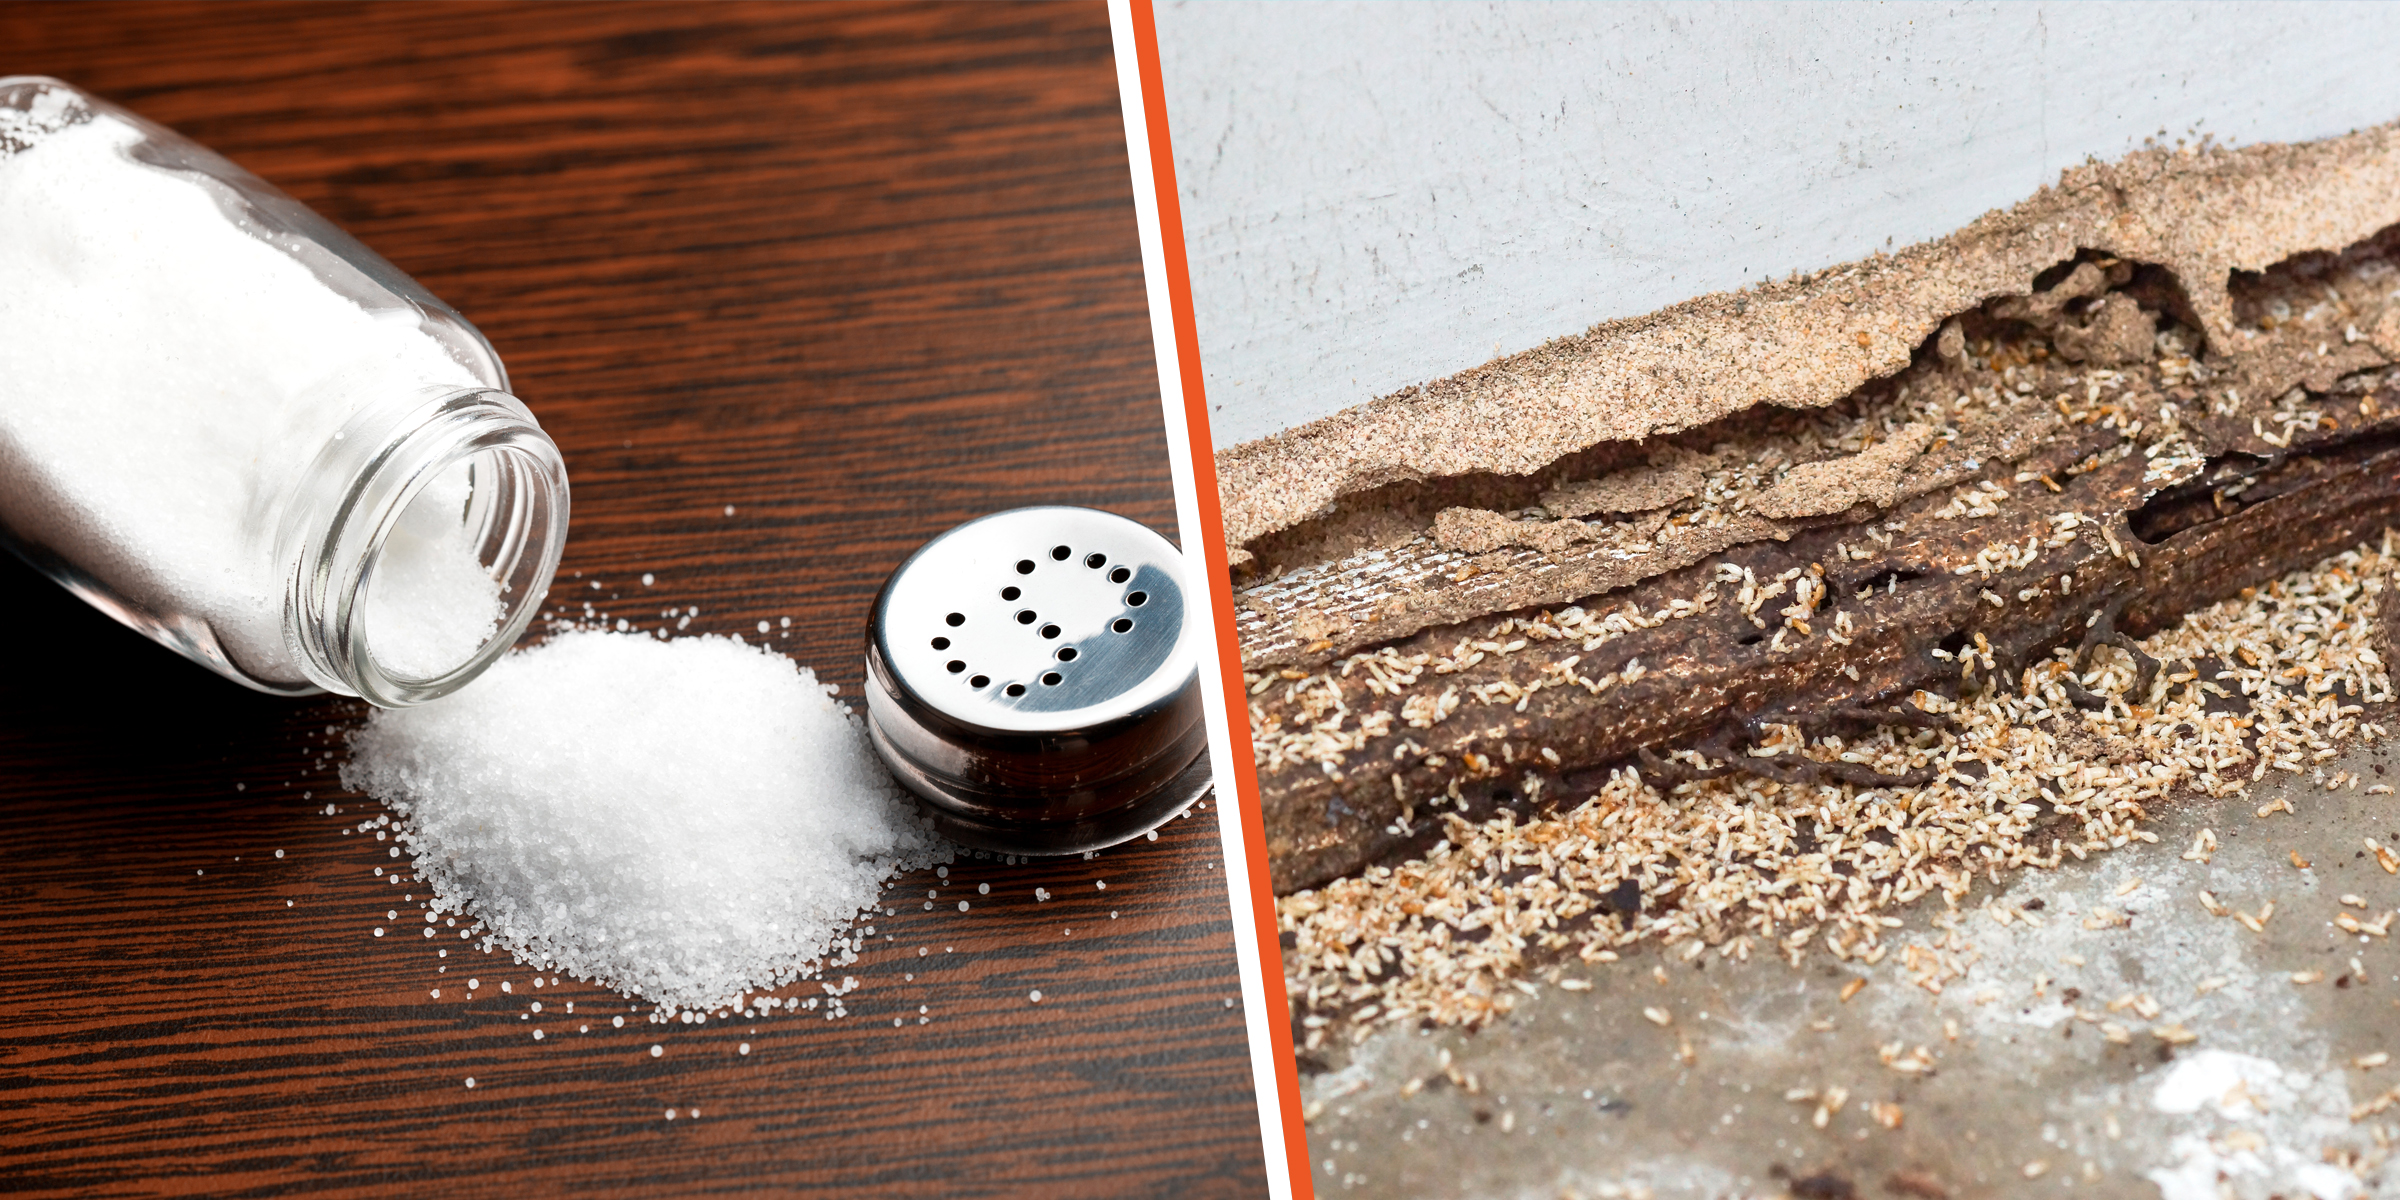 Salt | Termites | Source: Shutterstock